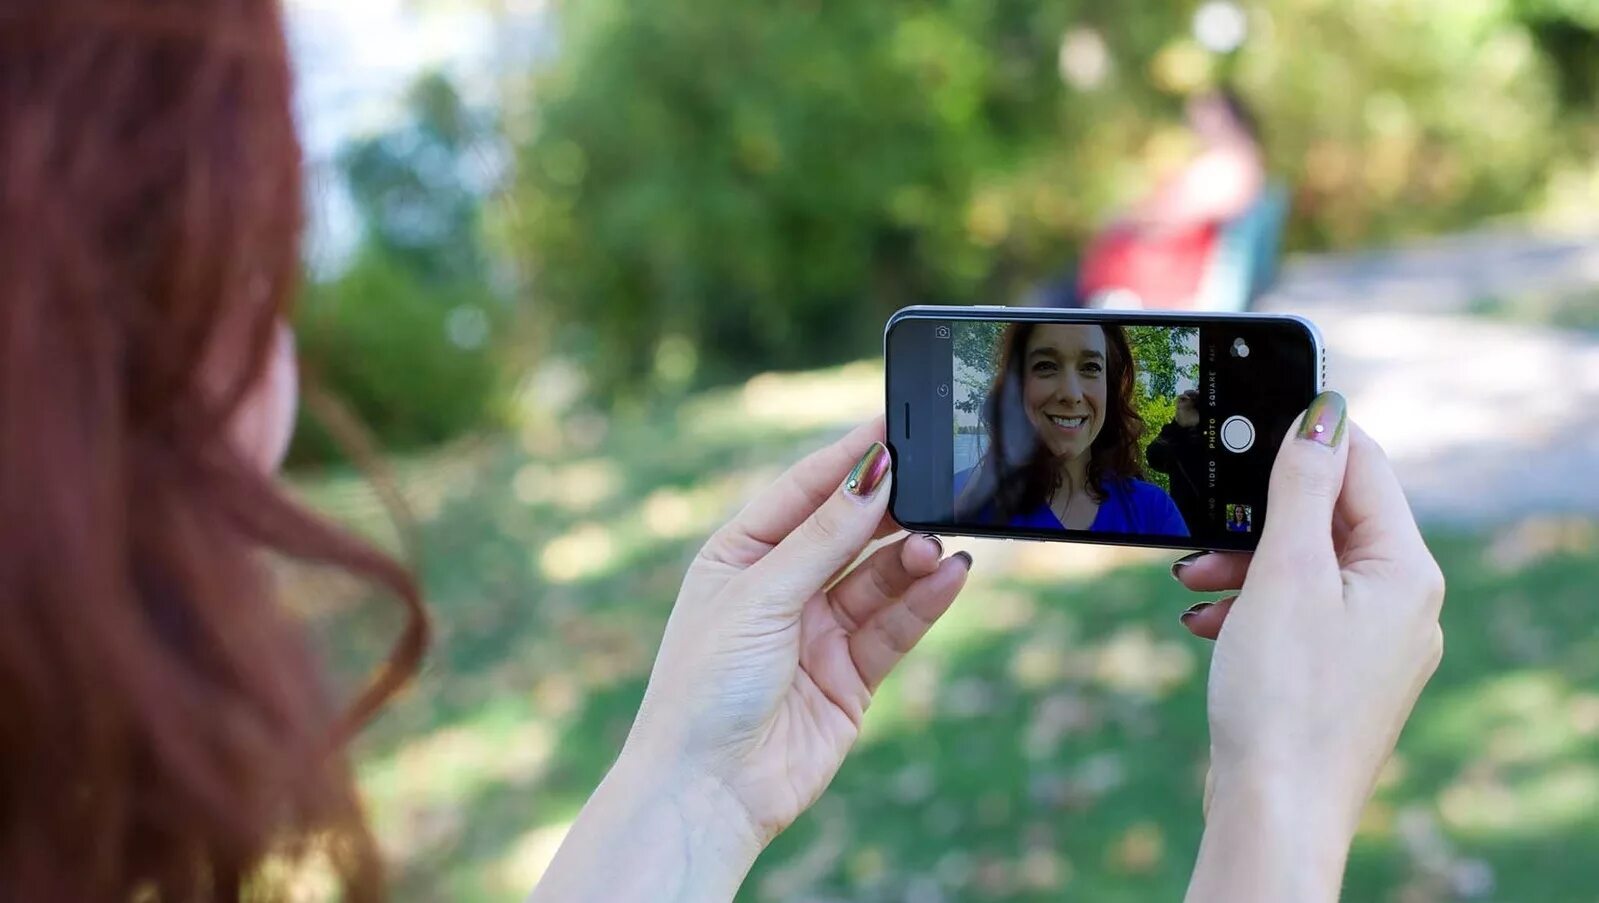 Iphone 6s фронтальная камера. Selfi Camera передняя камера iphone 6s 6. Фотографирует на телефон. Фоткает на телефон.